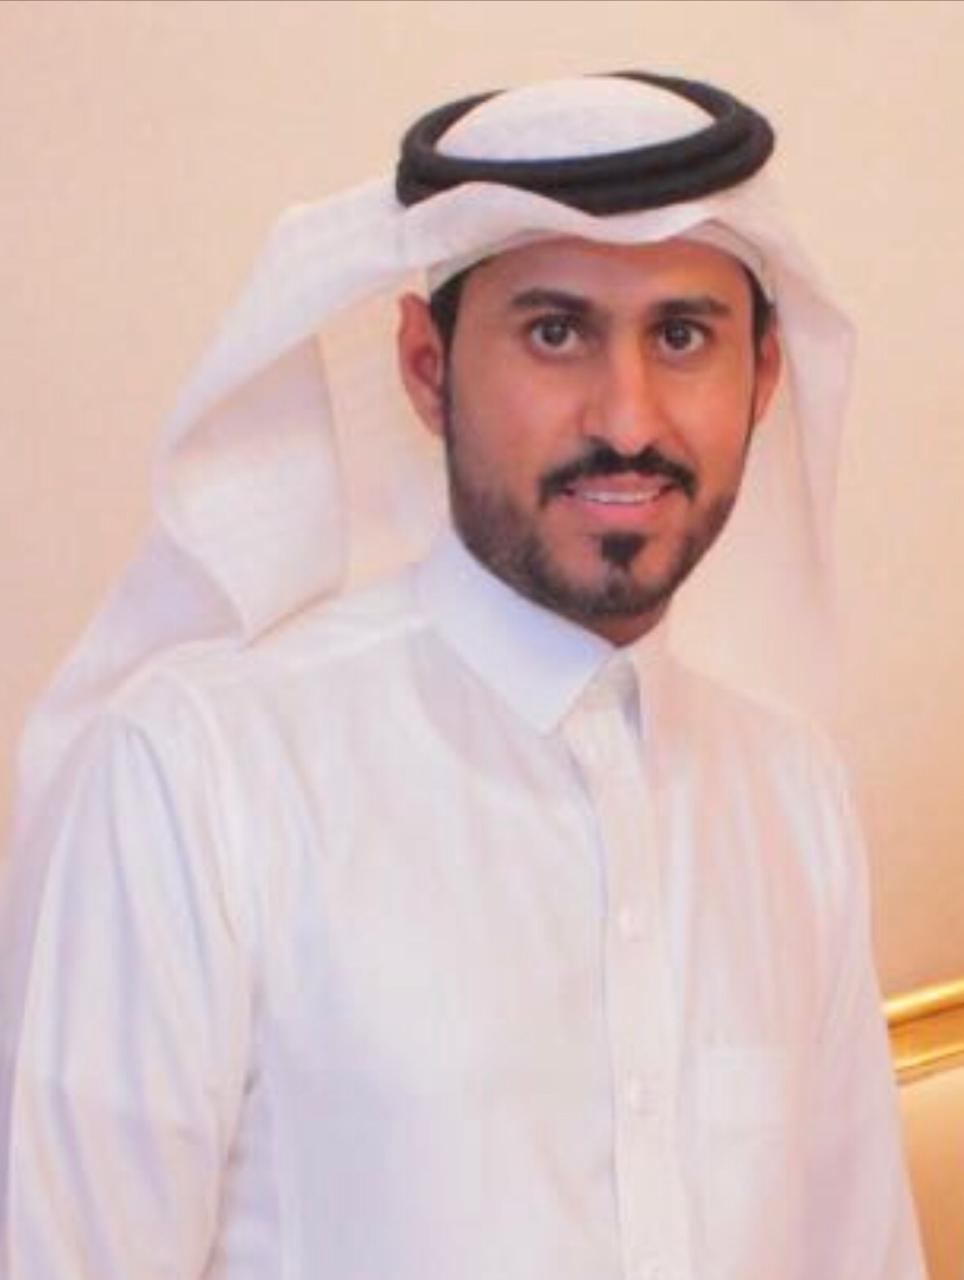 رئيس تحرير صحيفة “saudpost” :يوم التأسيس يهدف إلى الاعتزاز بالجذور الراسخة لهذه الدولة العظيمة